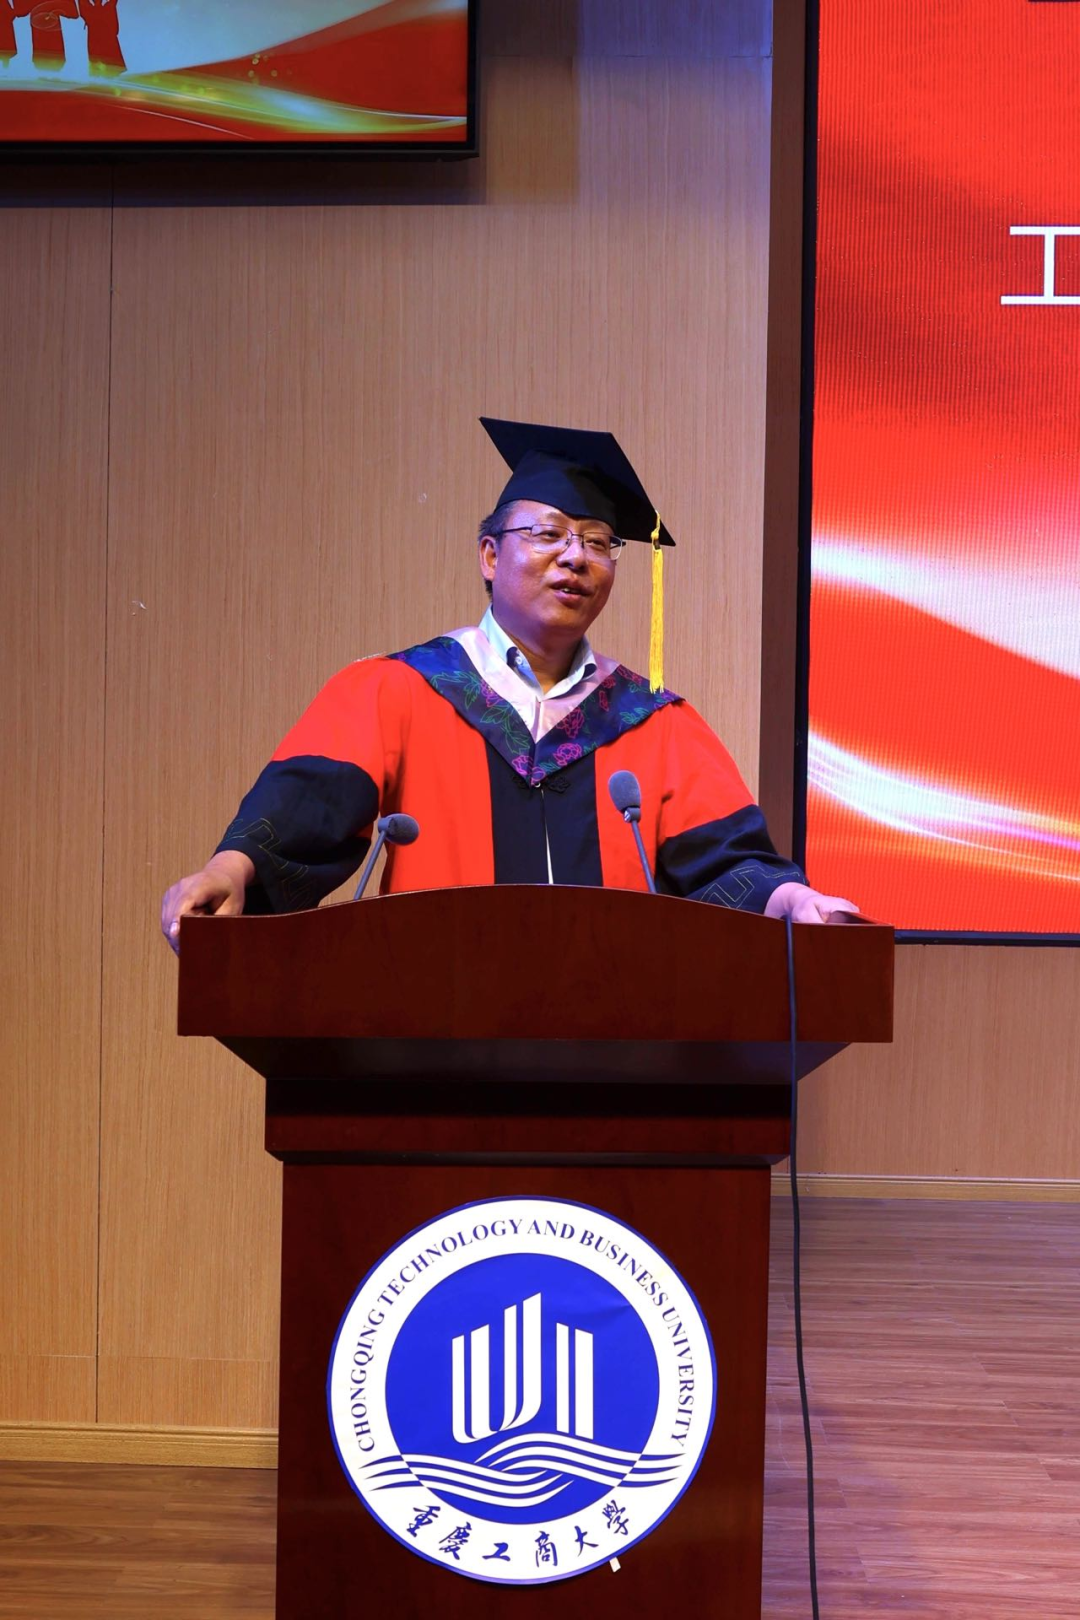 重庆工商大学第十届MBA联合会换届仪式成功举行